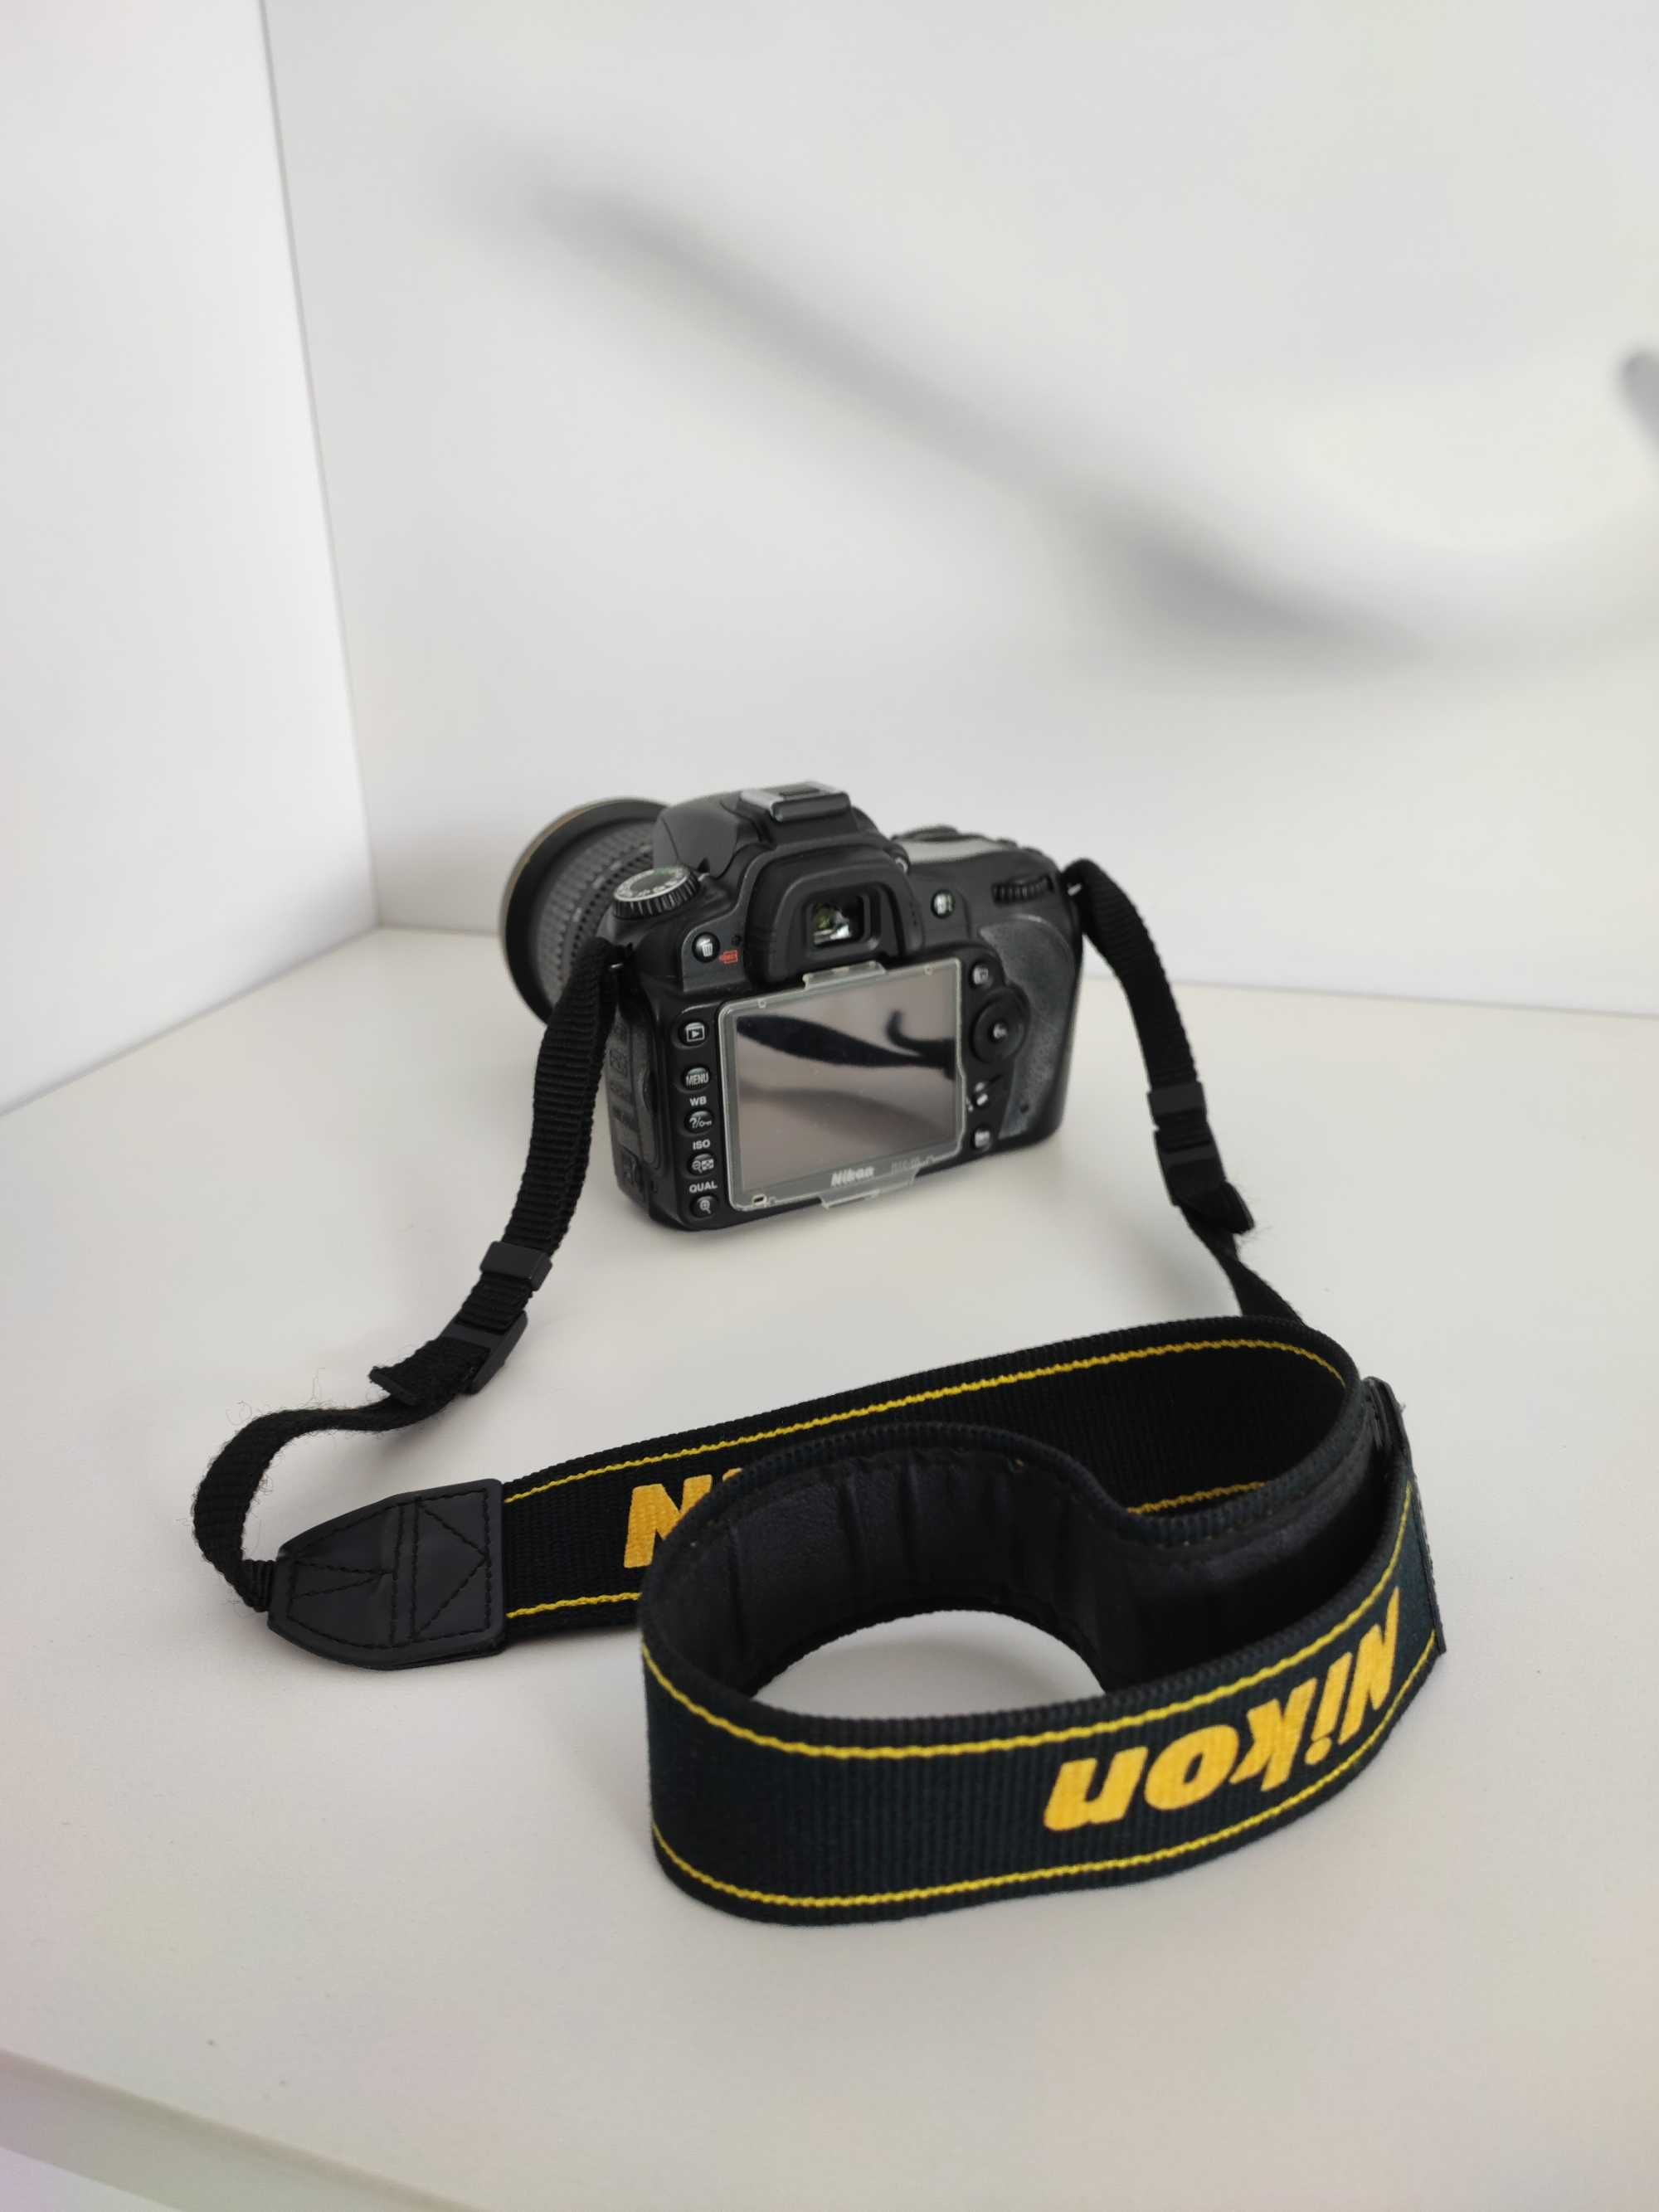 Máquina fotográfica Nikon D90 + lente AF-S 12-24mm f/4 G e acessórios